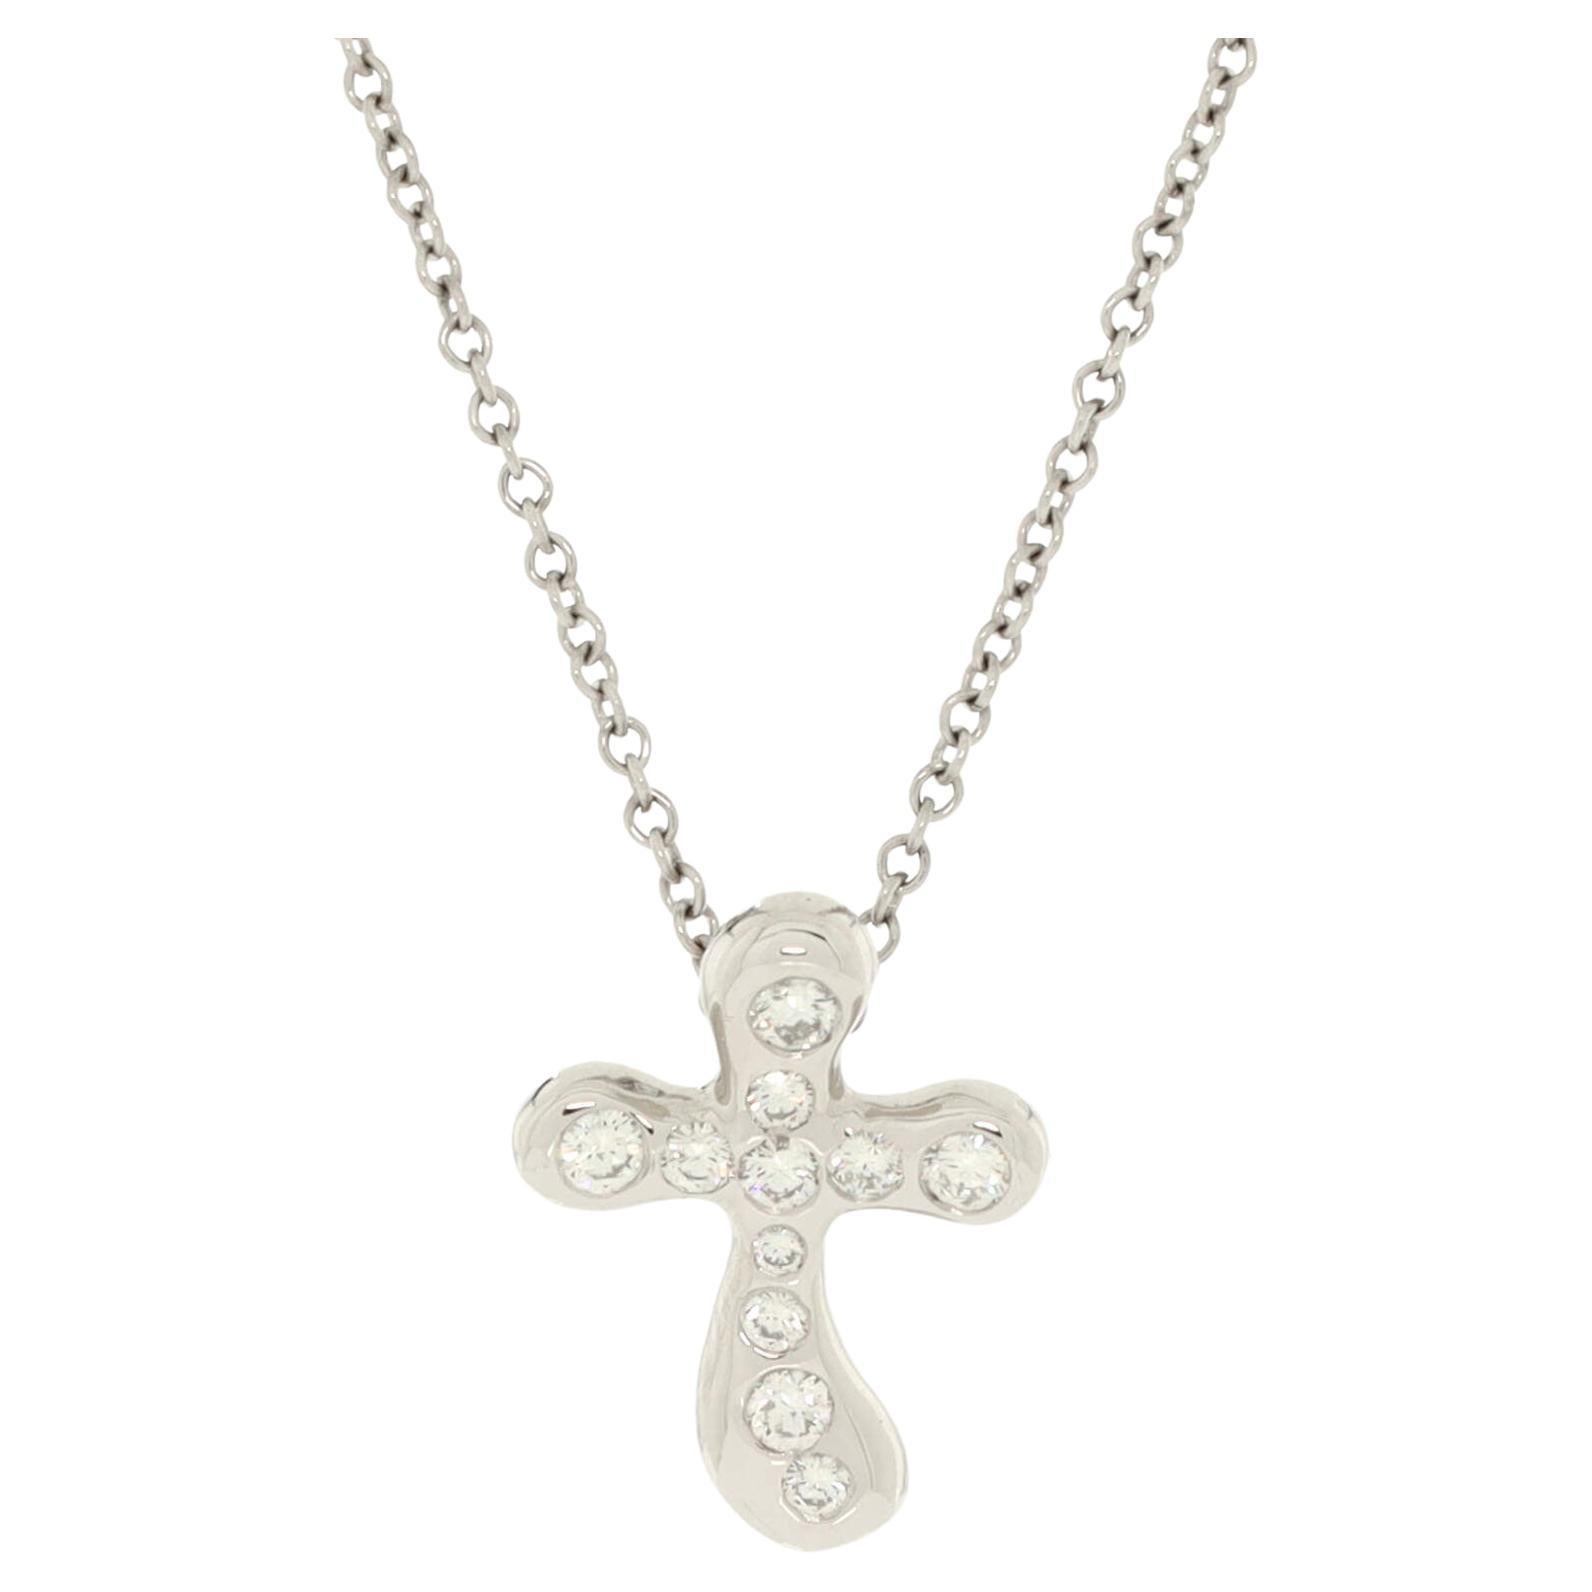 Tiffany & Co. Elsa Peretti Cross Pendant Necklace Platinum and Diamonds Small